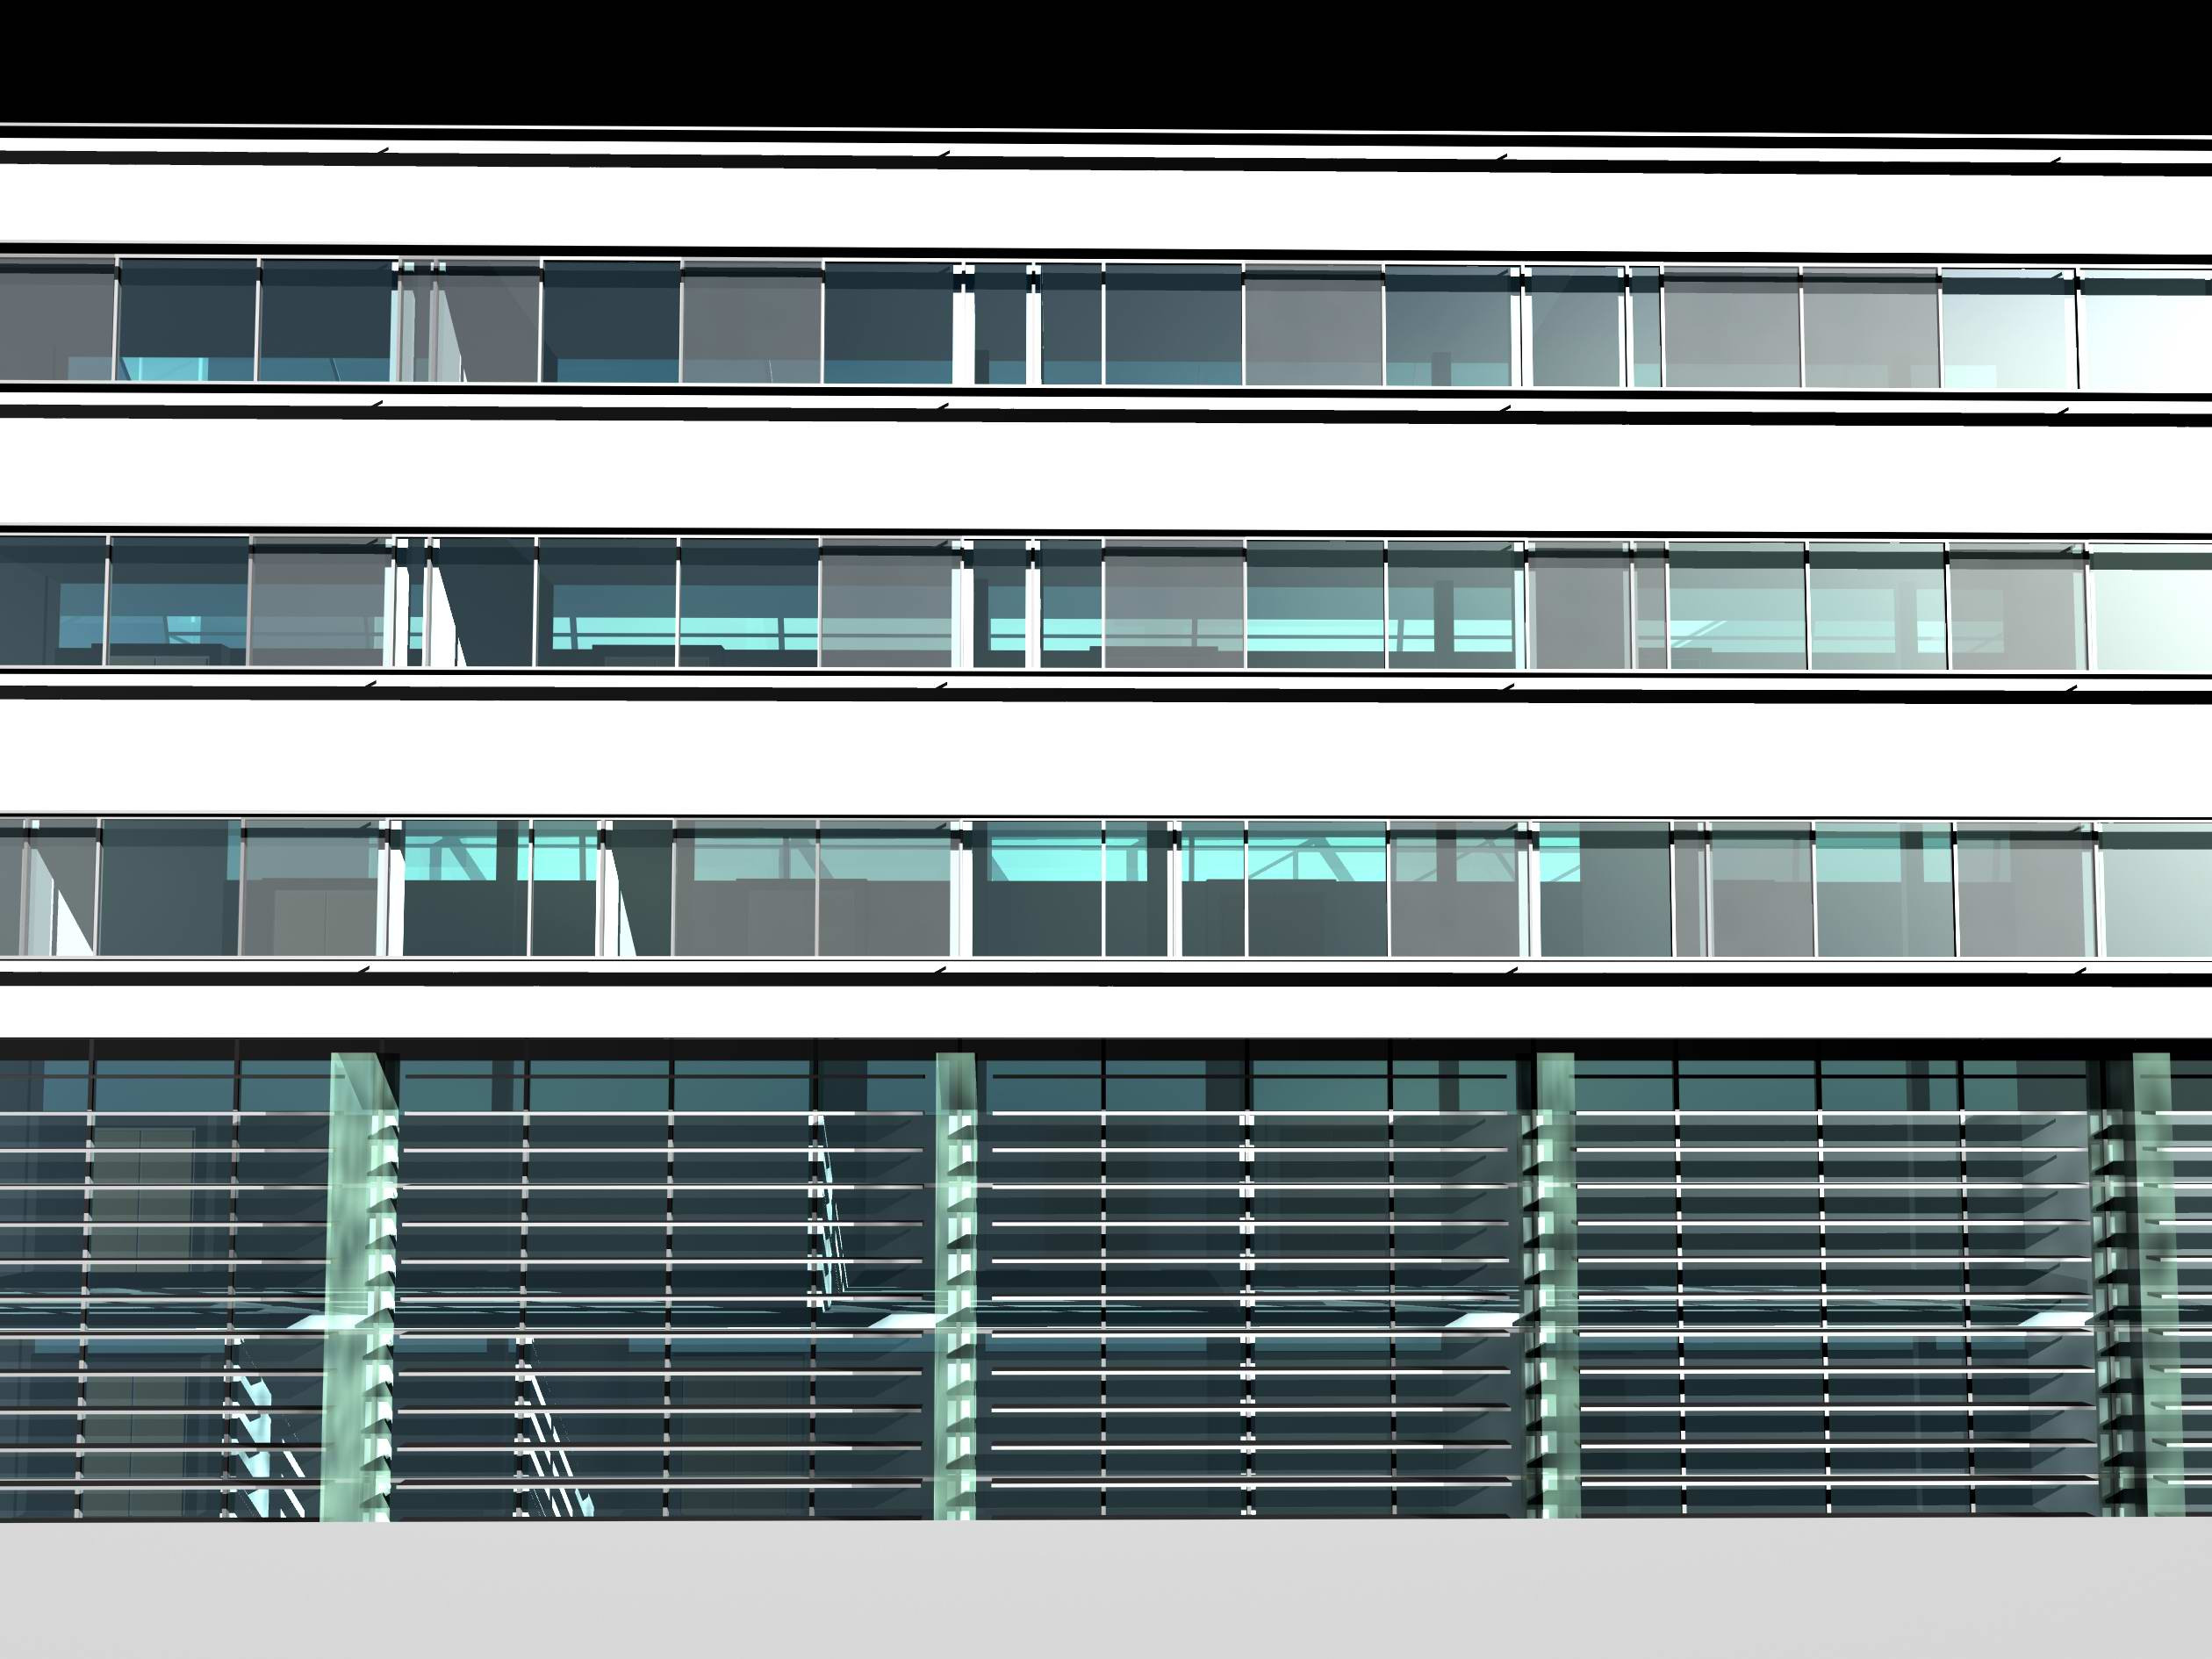 <p>© RUNSER / PRANTL architekten, Erweiterung Bundesschulzentrum Mistelbach, 2130 Mistelbach, Niederösterreich, Österreich, Wettbewerb, 2000, Schule, Sport</p>